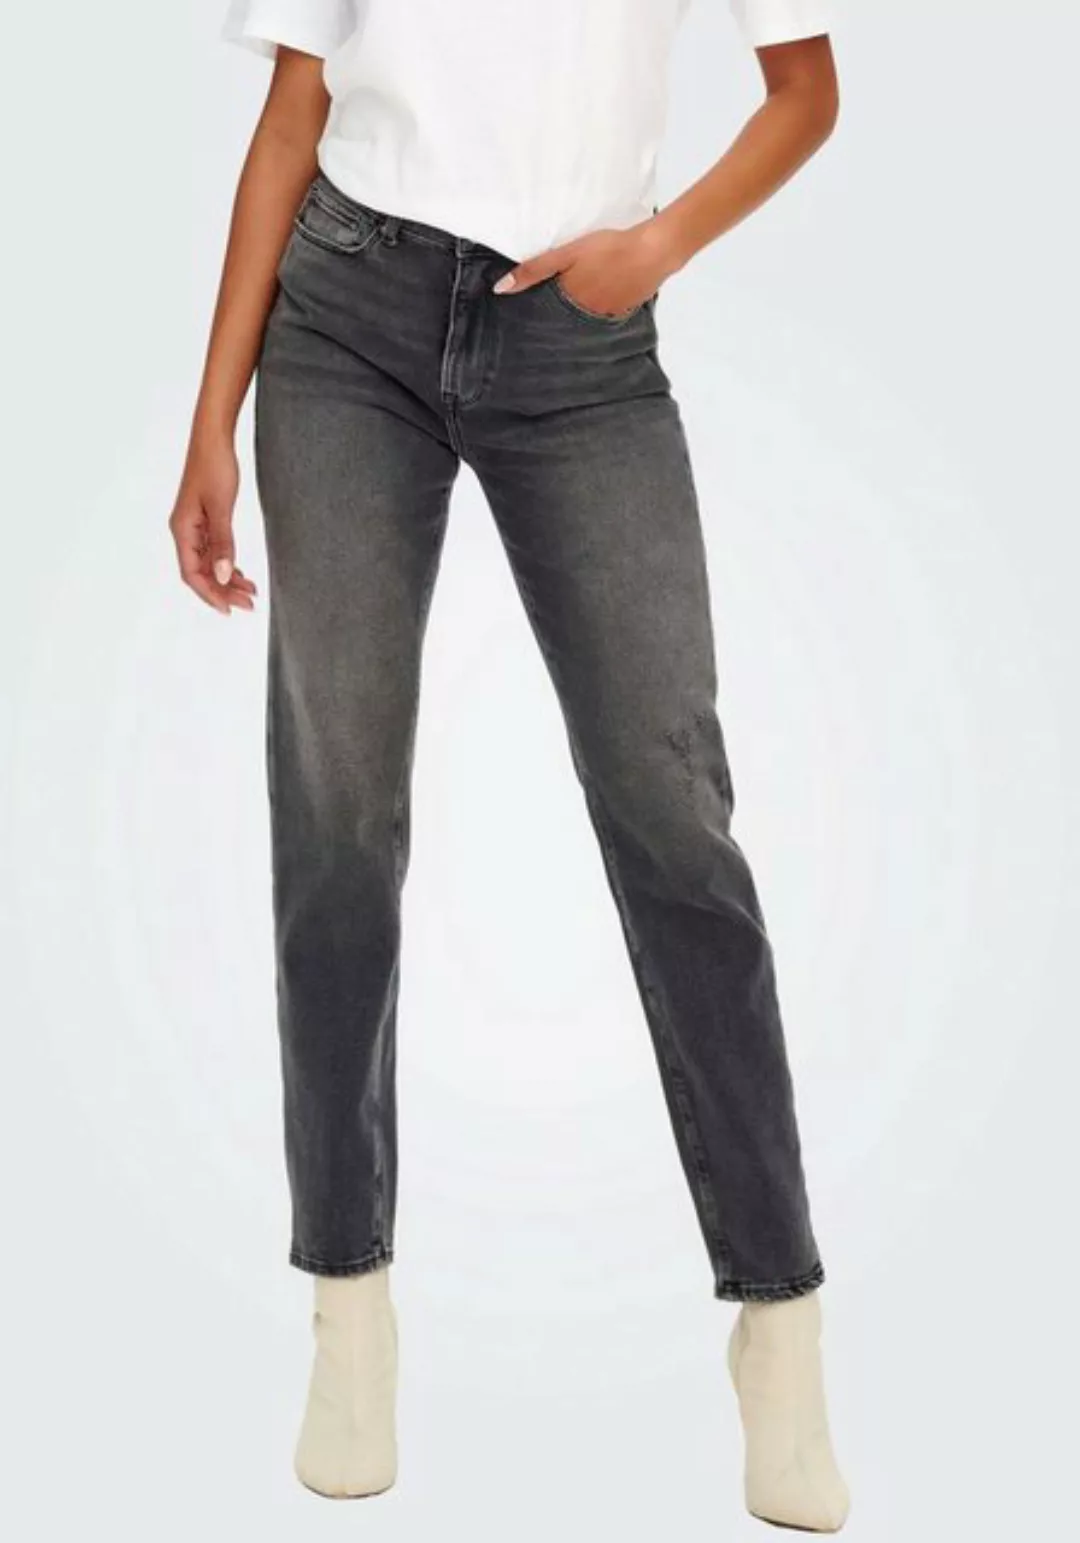 Only Damen Jeans ONLEMILY CRO614 - Straight Fit - Grau - Dark Grey Denim günstig online kaufen